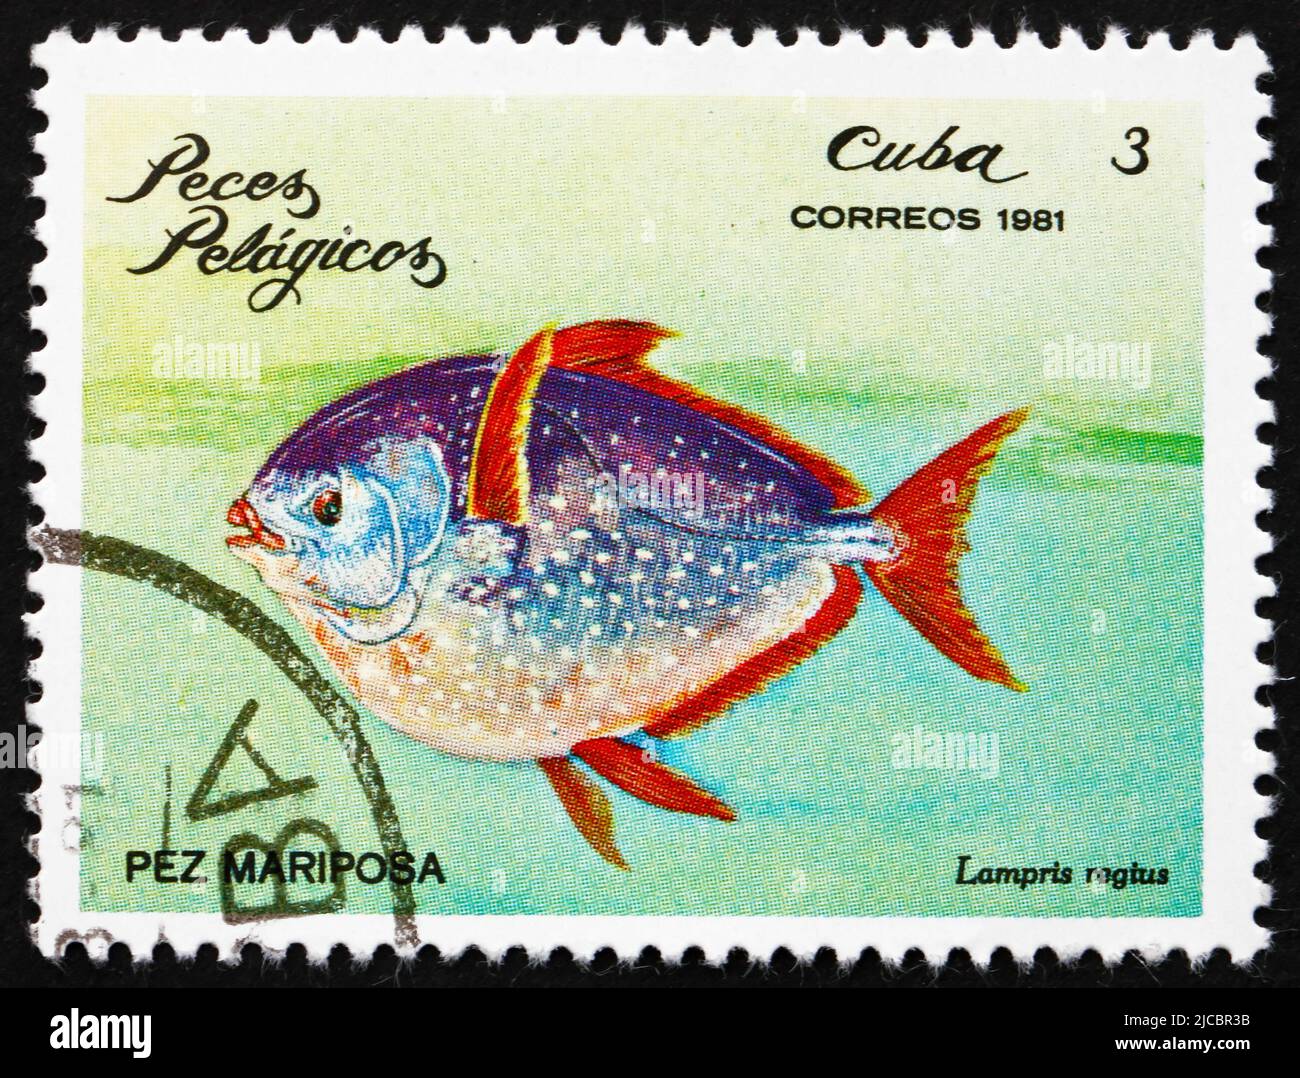 CUBA - VERS 1981 : un timbre imprimé à Cuba montre le poisson de lune, Lampris Regius, poisson pélagique, vers 1981 Banque D'Images